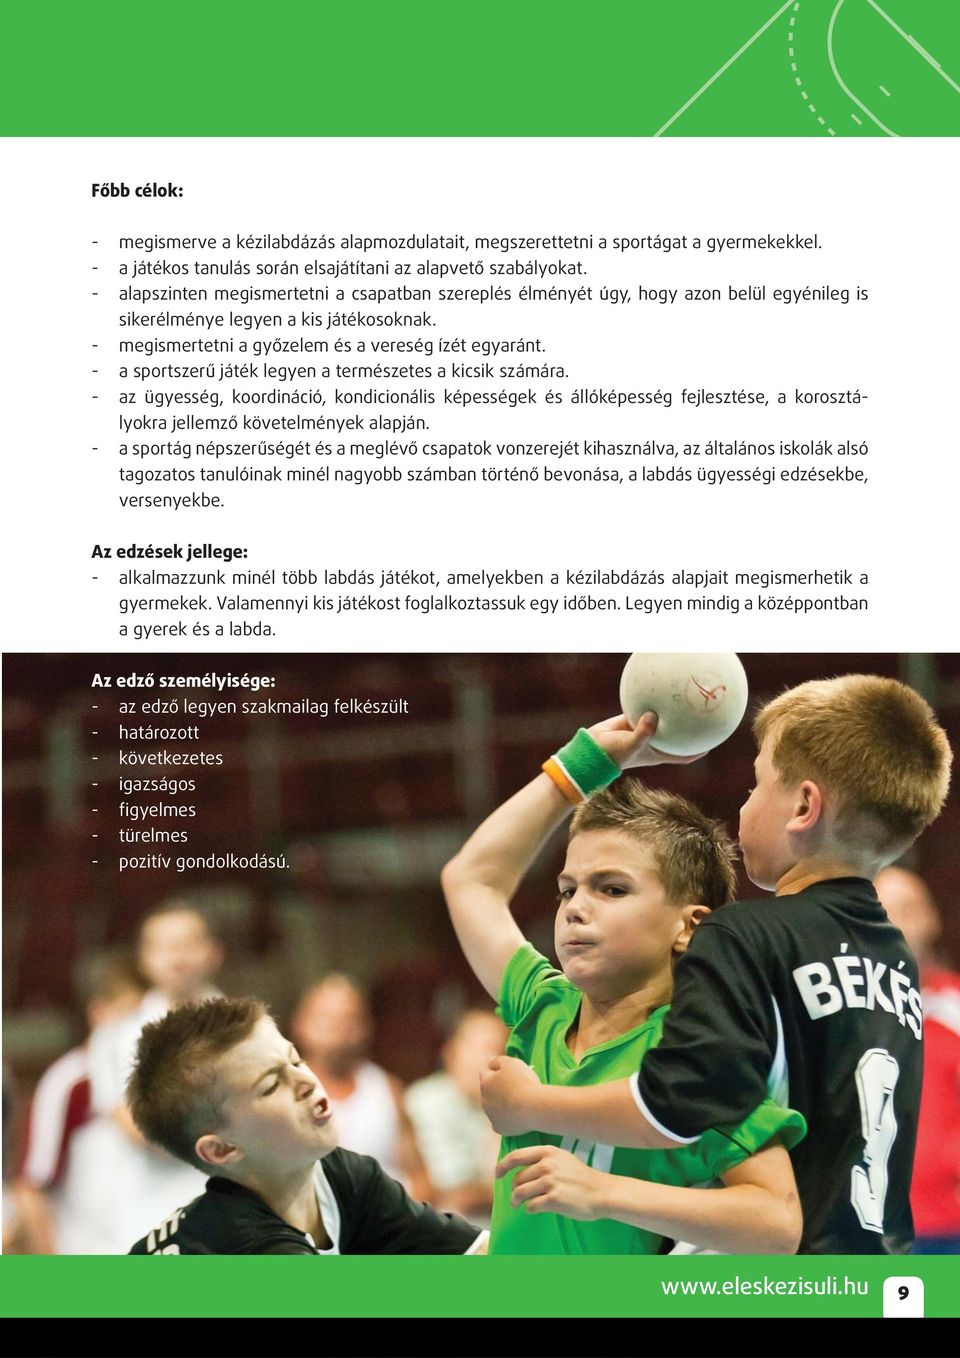 - a sportszerű játék legyen a természetes a kicsik számára. - az ügyesség, koordináció, kondicionális képességek és állóképesség fejlesztése, a korosztályokra jellemző követelmények alapján.